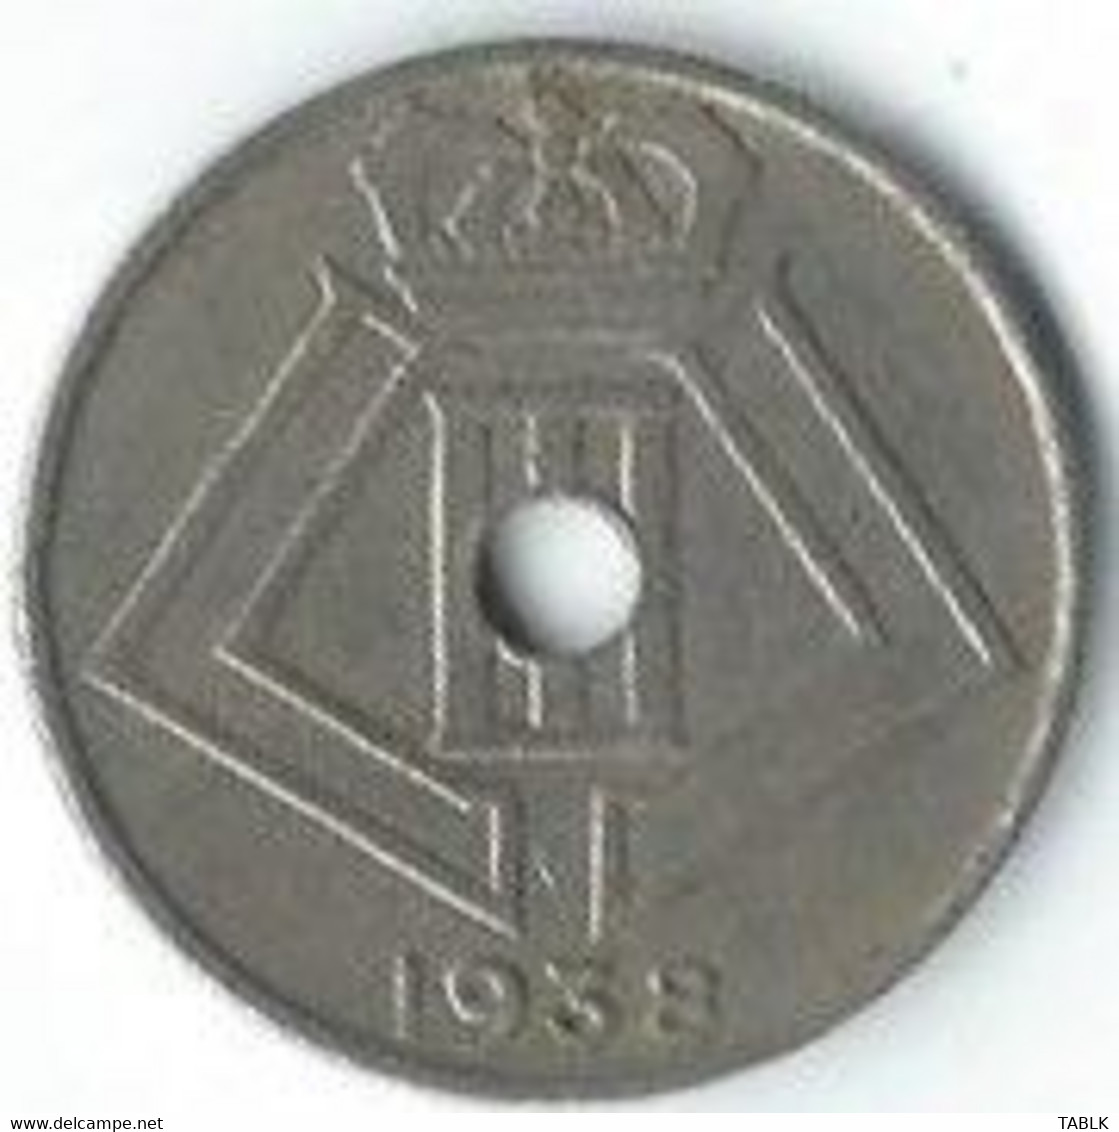 M975 - BELGIË - BELGIUM - 10 CENTIEM 1938 - 10 Centimes